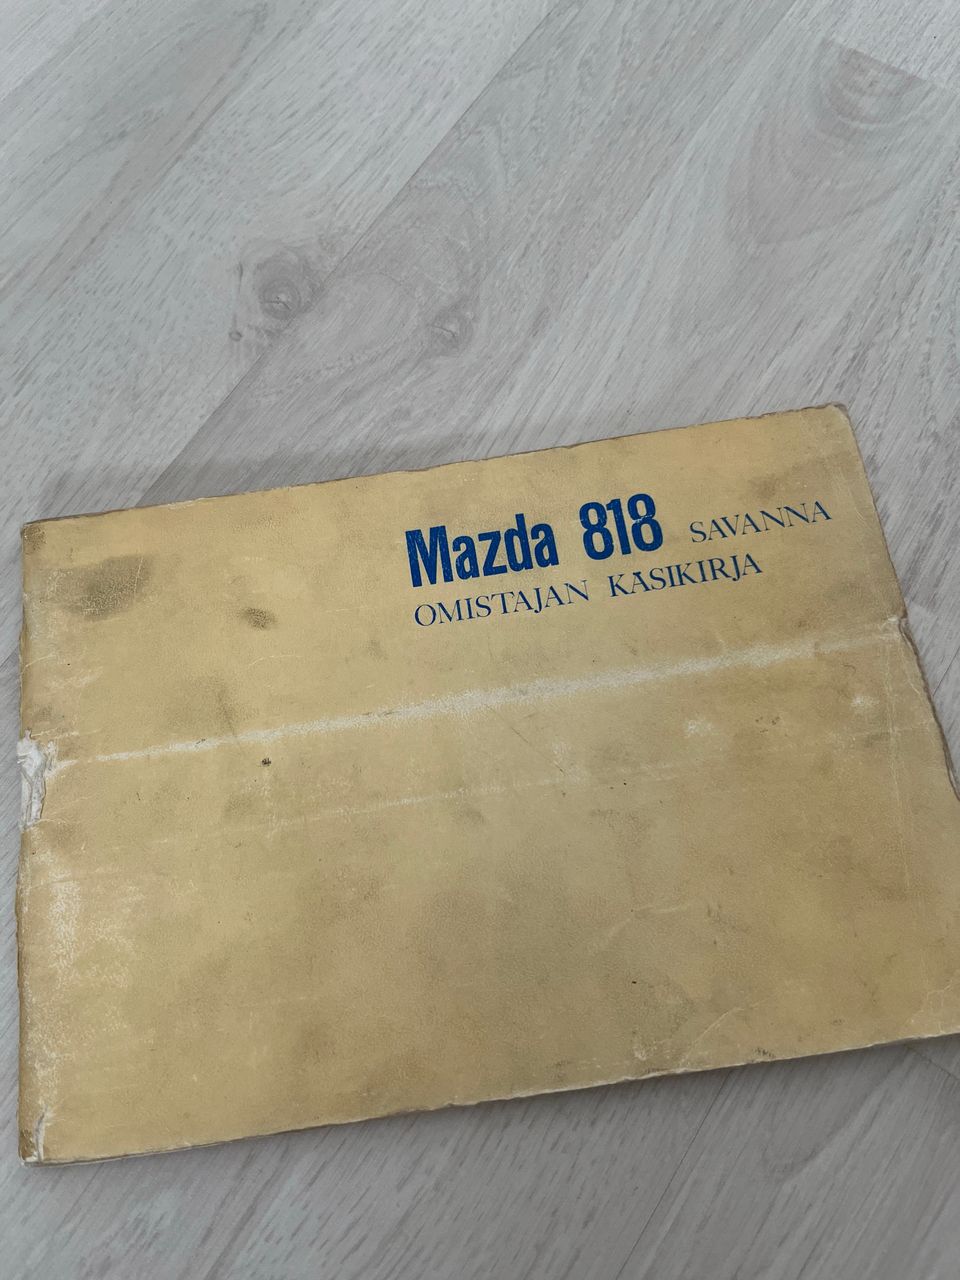 Mazda 818 savanna omistajan käsikirja